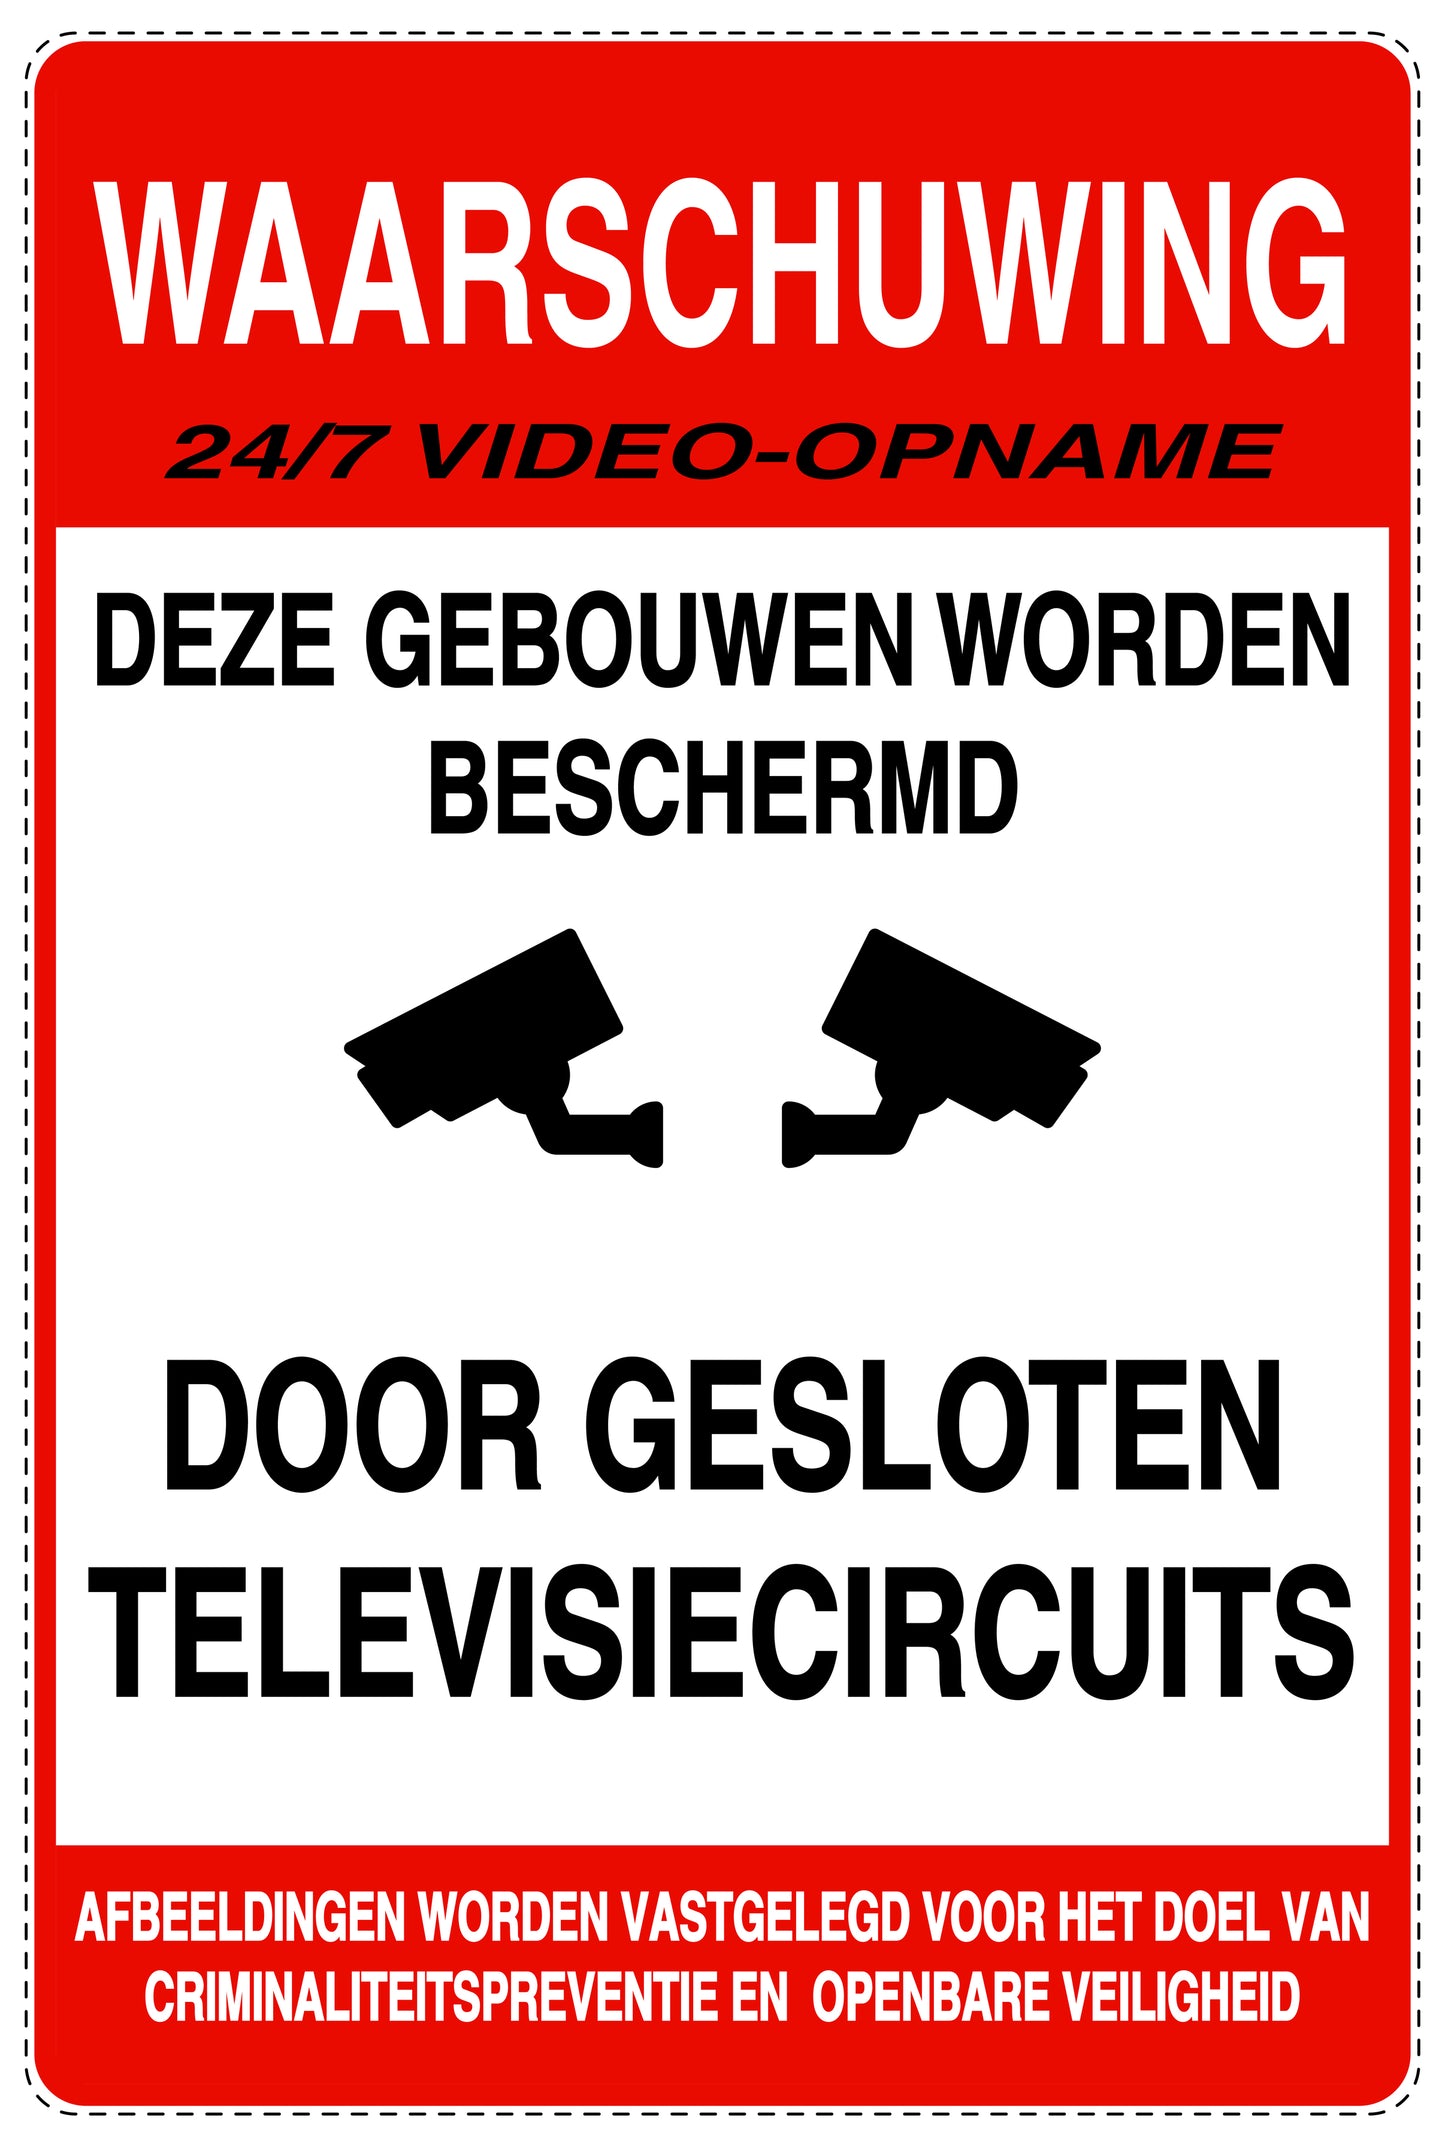 Geen toegang - videobewaking "Waasrschuwing 24/7 video - opname Deze gebouwen worden beschermd door gesloten televisiecircuits" 10-40 cm EW-RESTRICT-2010